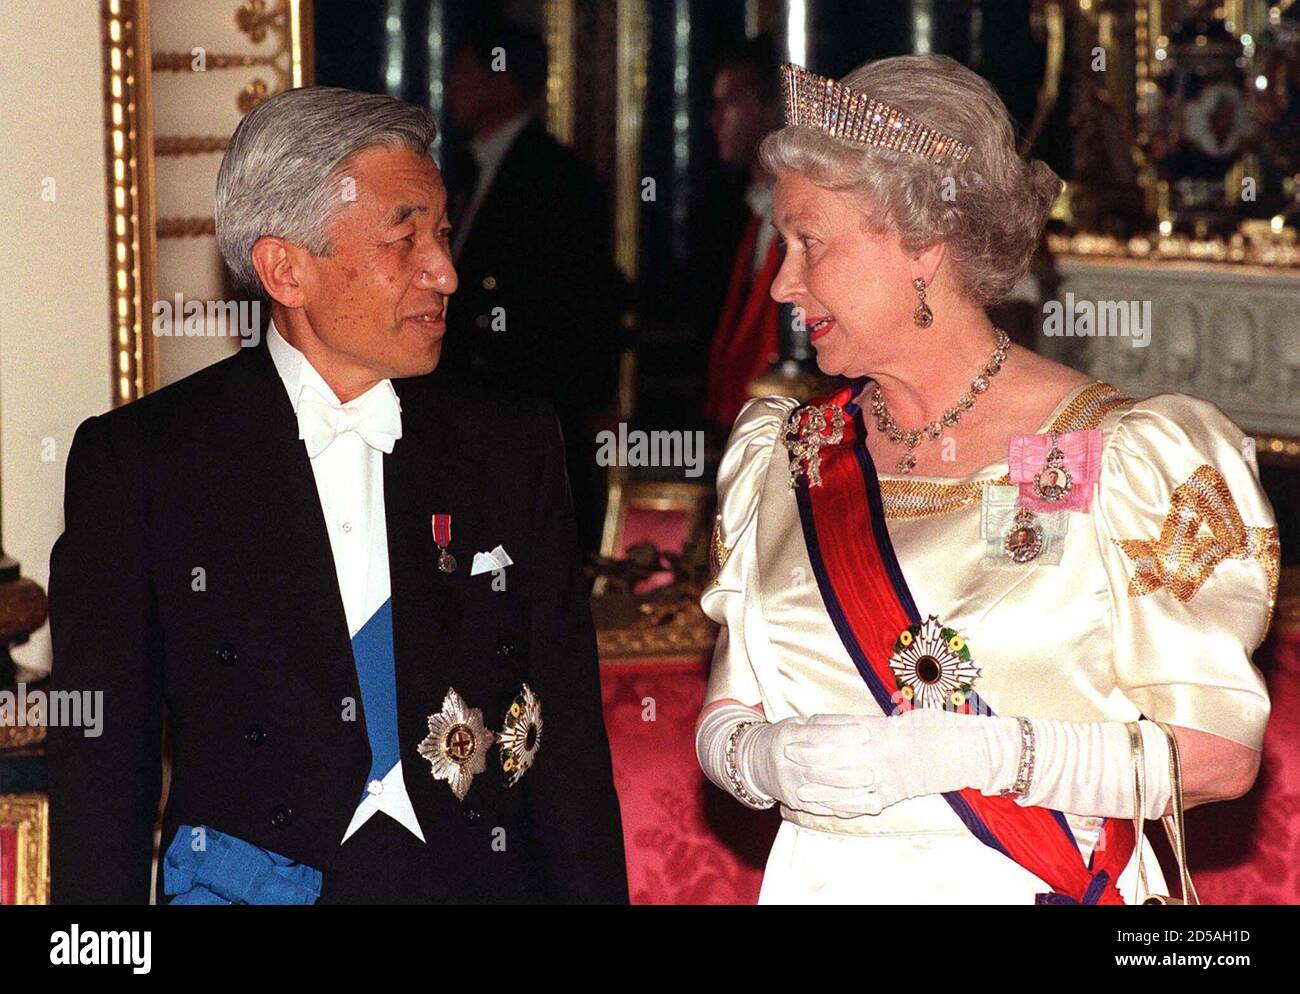 La Reina Isabel II (R) de Gran Bretaña conversa con el emperador japonés  Akihito antes de entrar en el Salón de banquetes del Estado en el Palacio  de Buckingham el 26 de